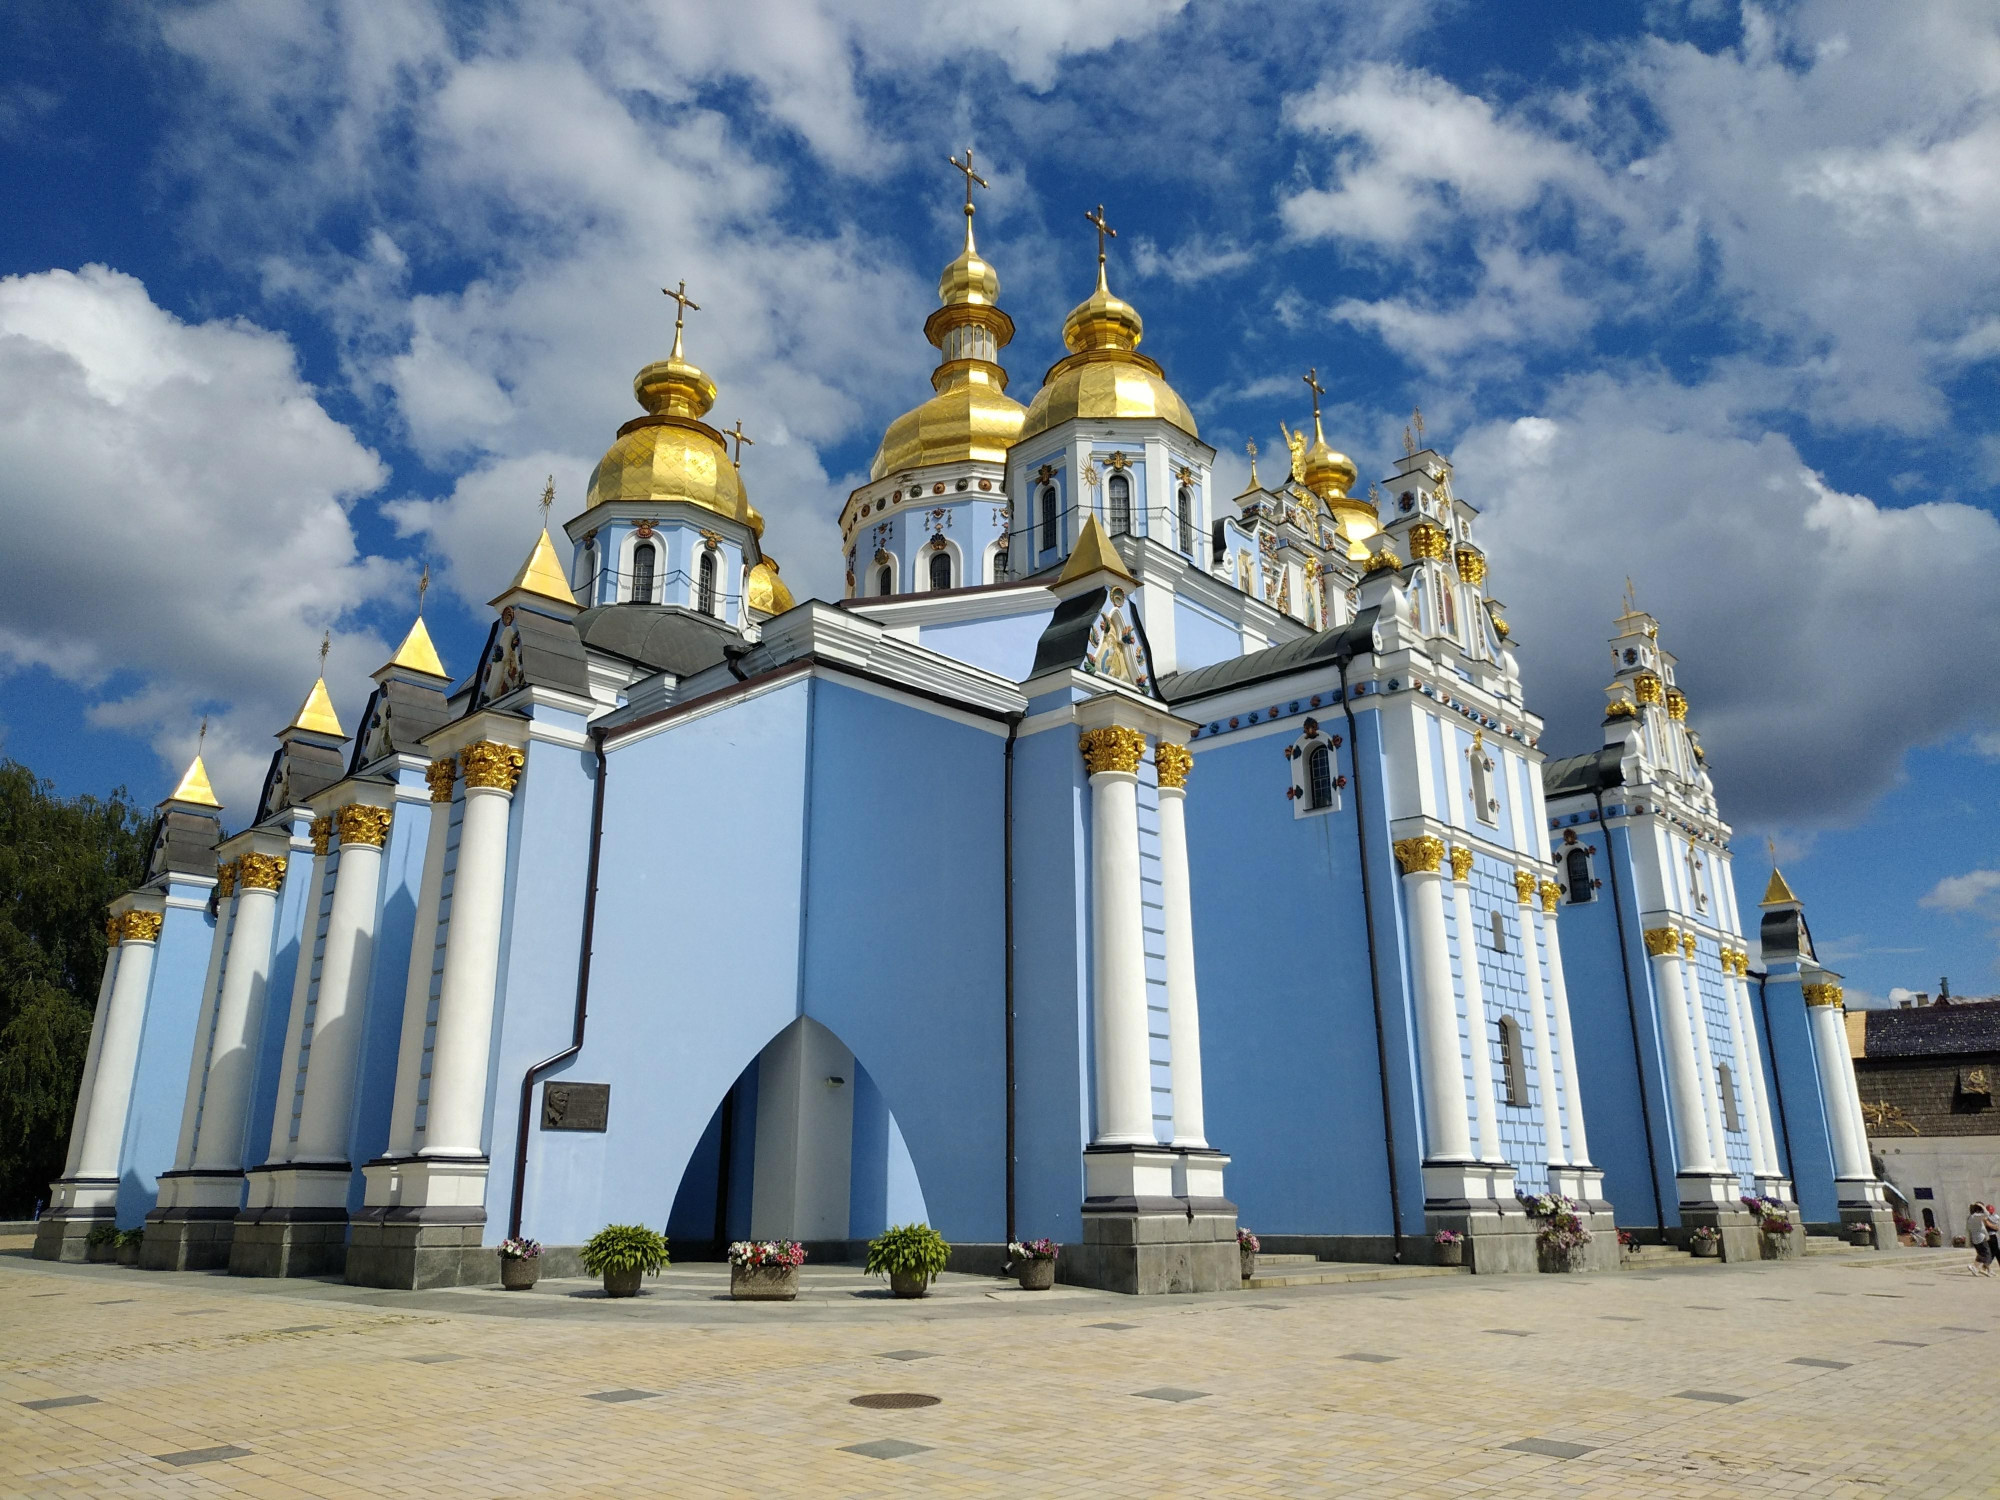 Михайлівський золотоверхий монастир (Київ, Україна)<br/>
